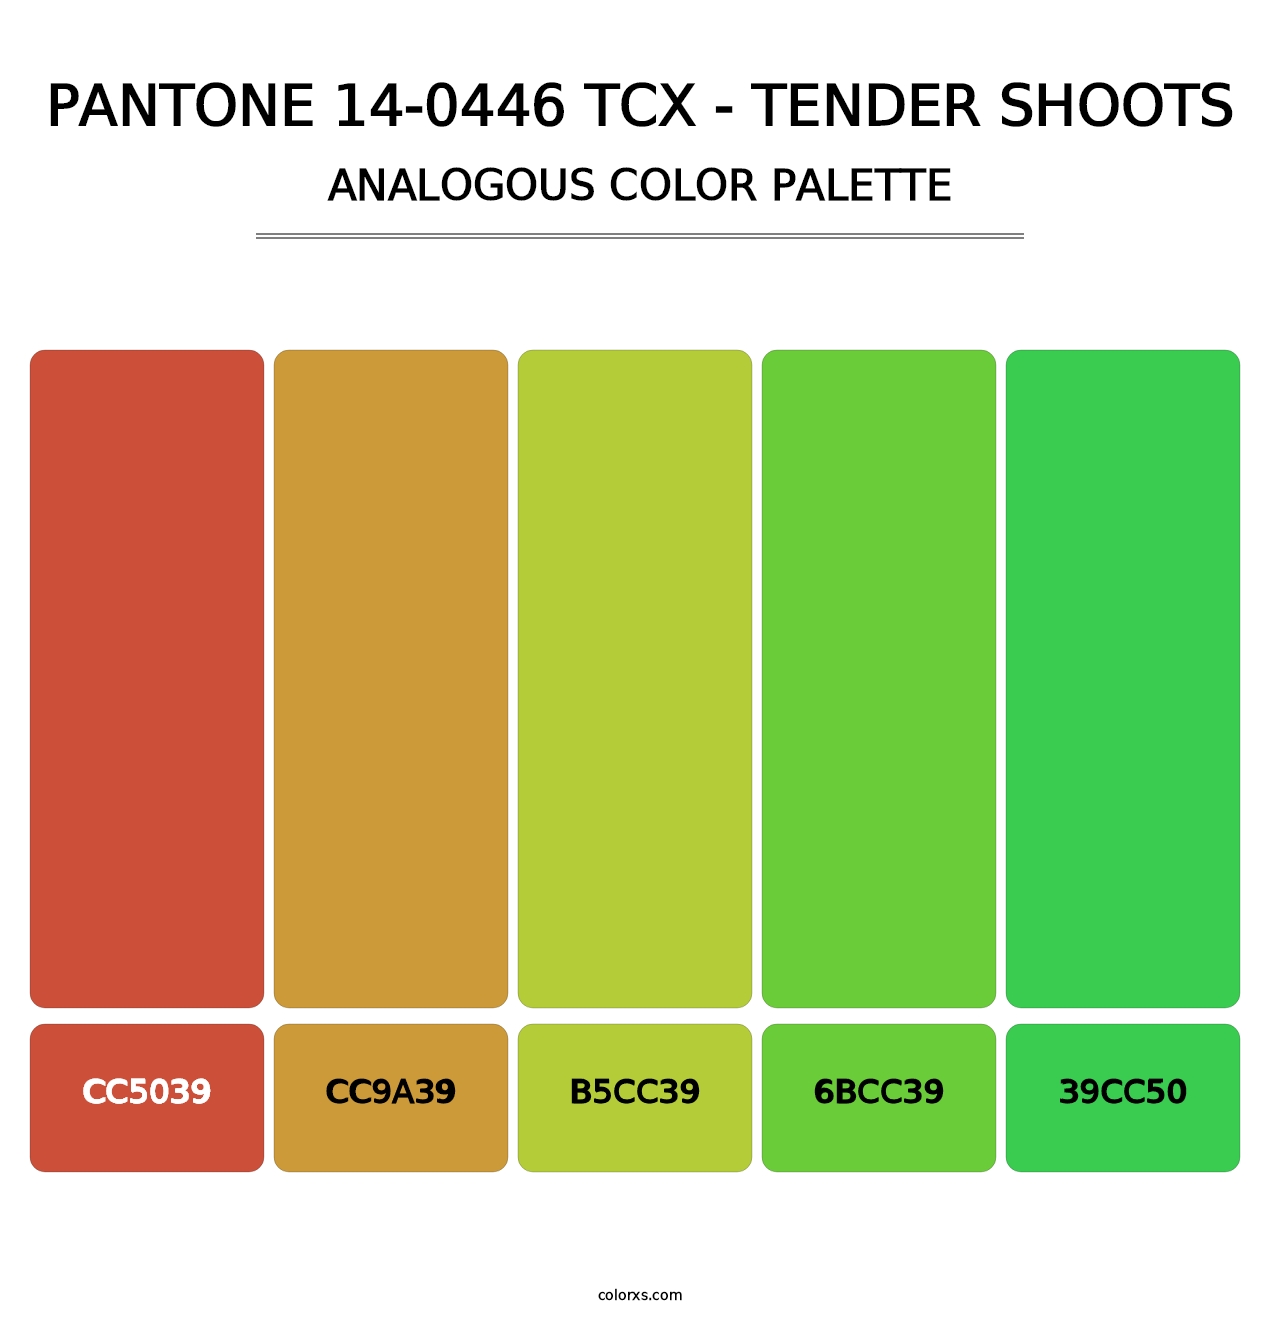 PANTONE 14-0446 TCX - Tender Shoots - Analogous Color Palette